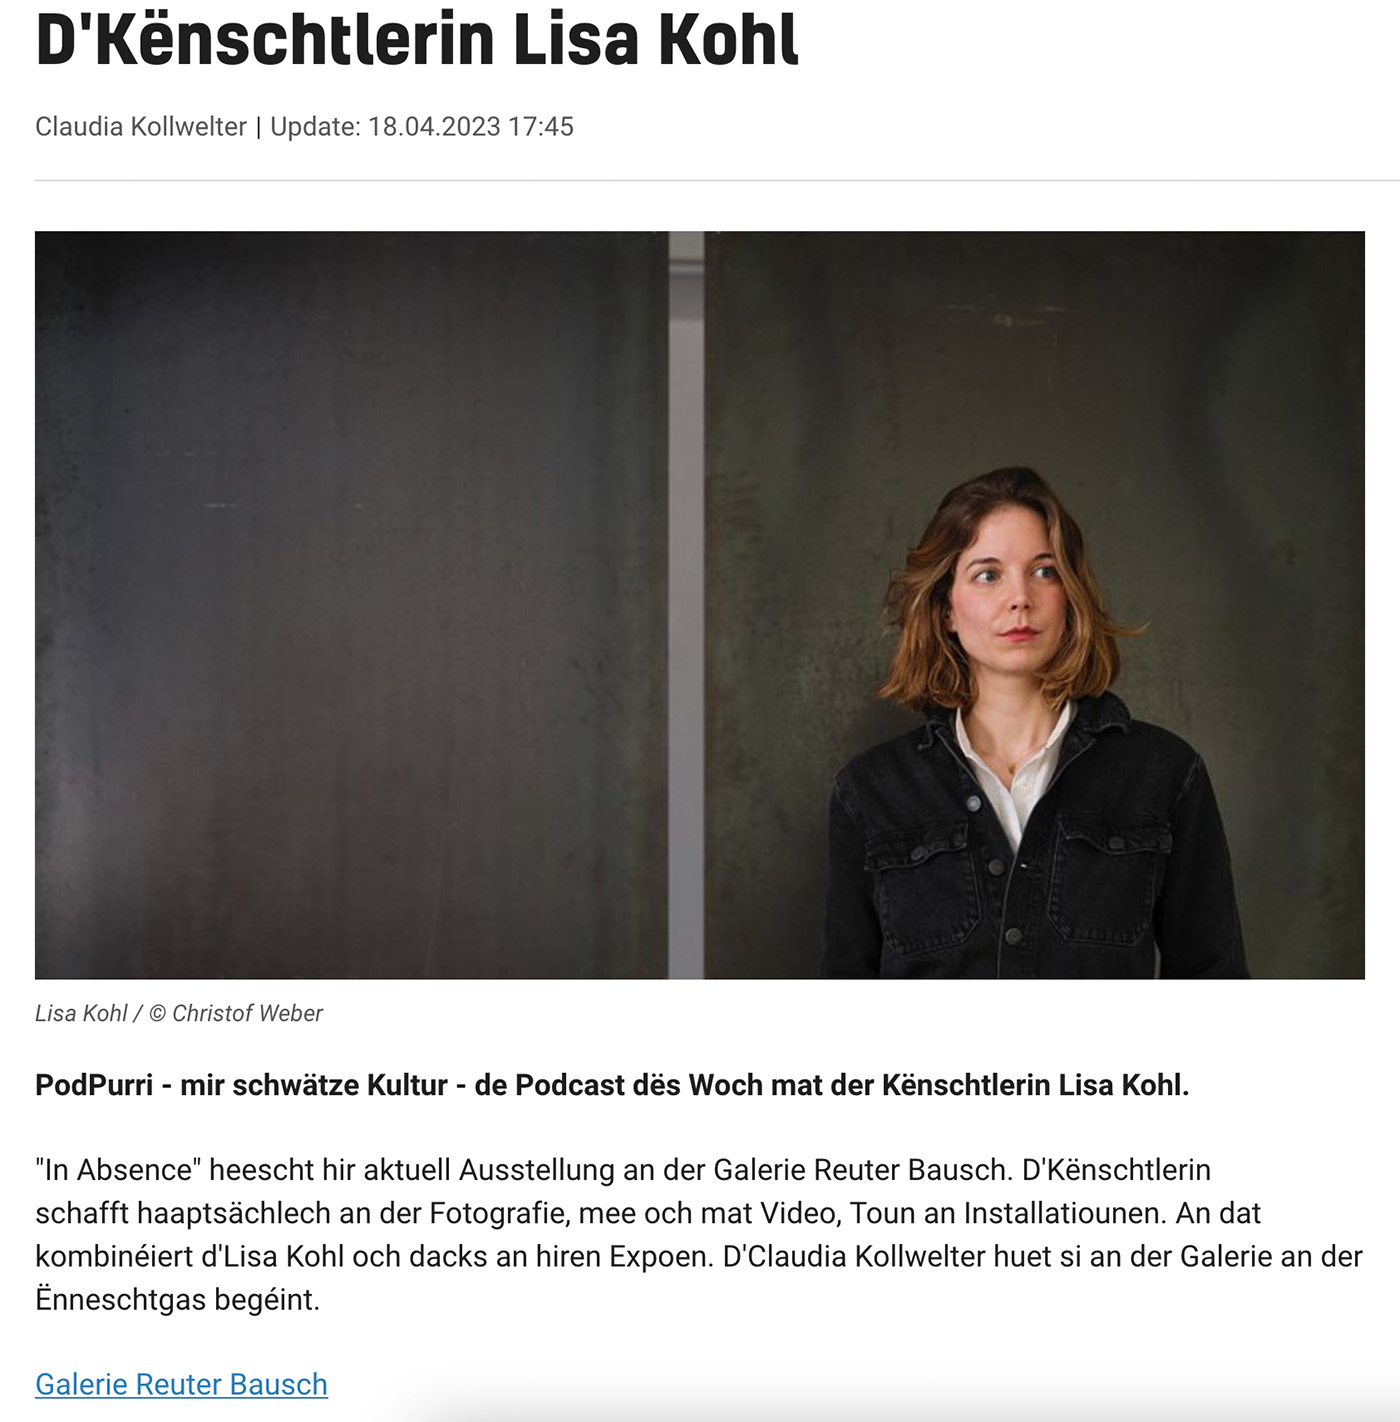 News of Reuter Bausch Art Gallery PodPurri - mir schwtze Kultur - de Podcast ds Woch mat der Knschtlerin Lisa Kohl. 